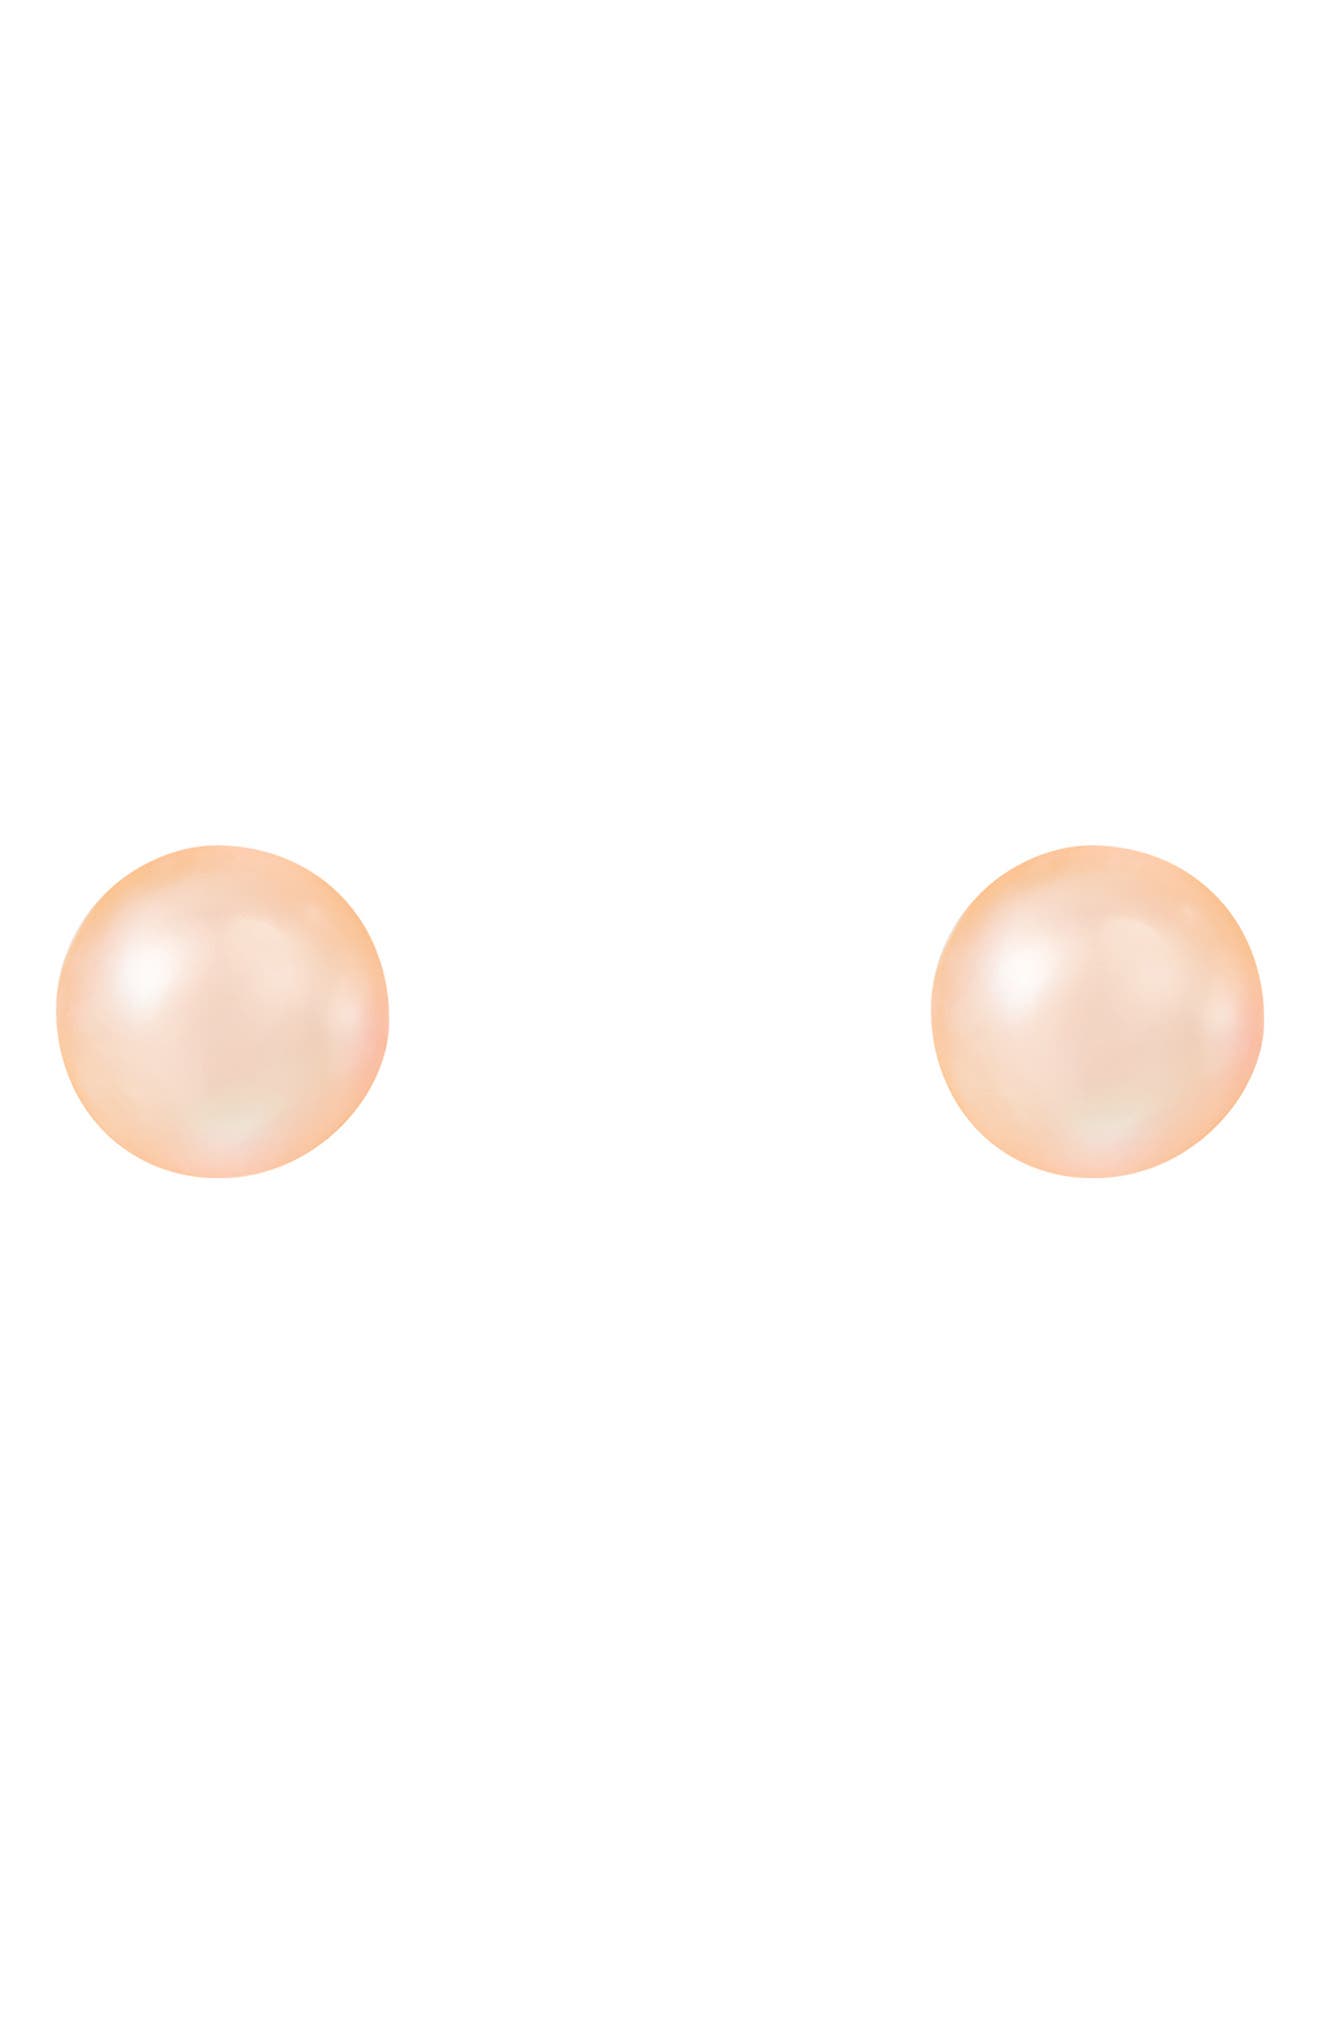 Splendid Pearls 8mm Pink Freshwater Pearl Round Stud Earrings